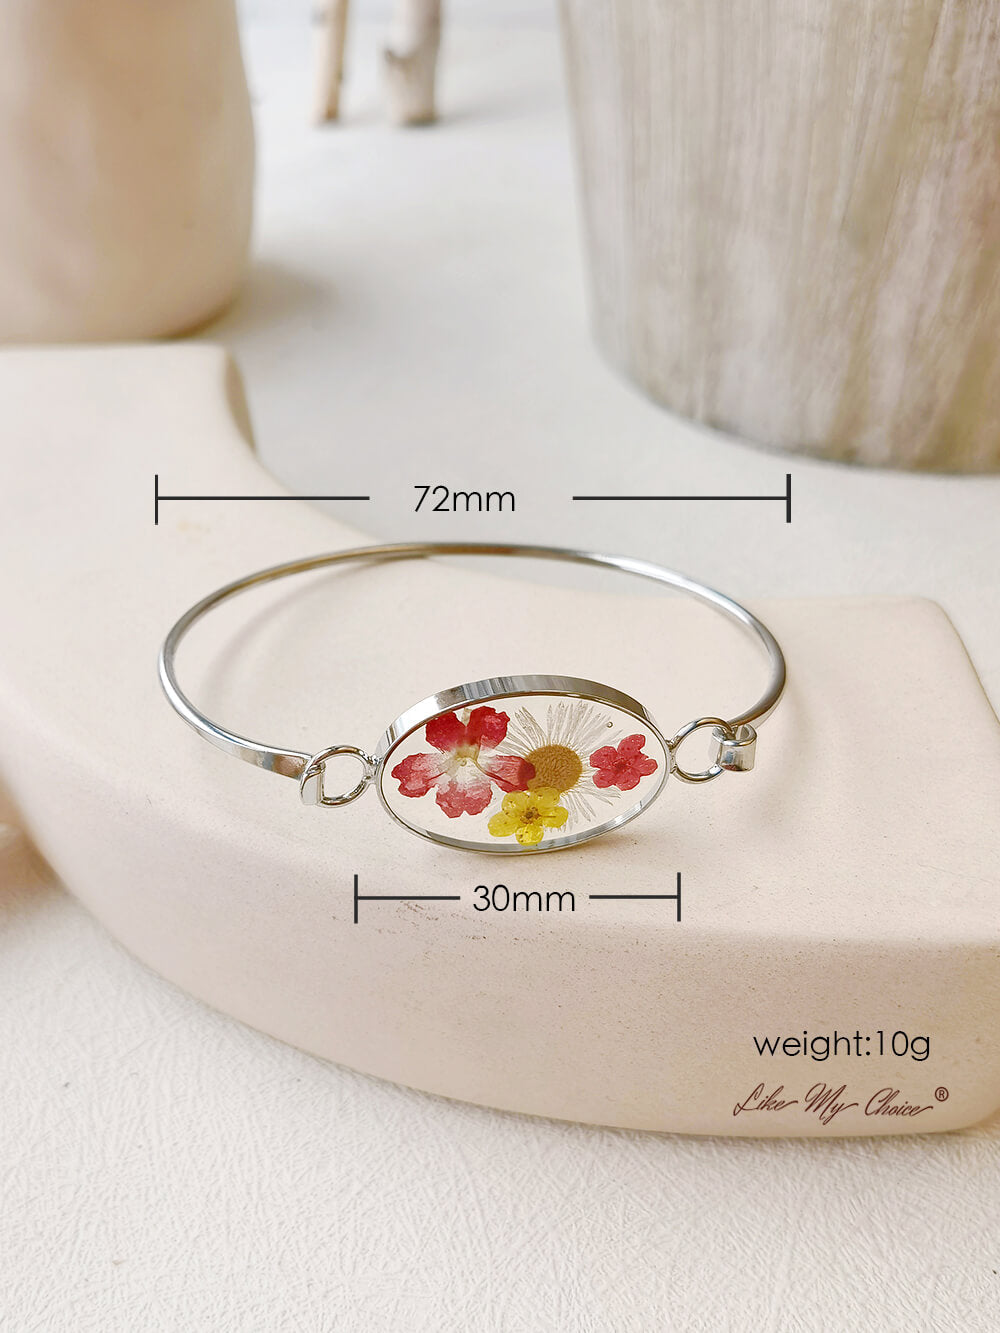 Handgefertigtes verstellbares Armband mit getrockneten Blumen aus Kunstharz